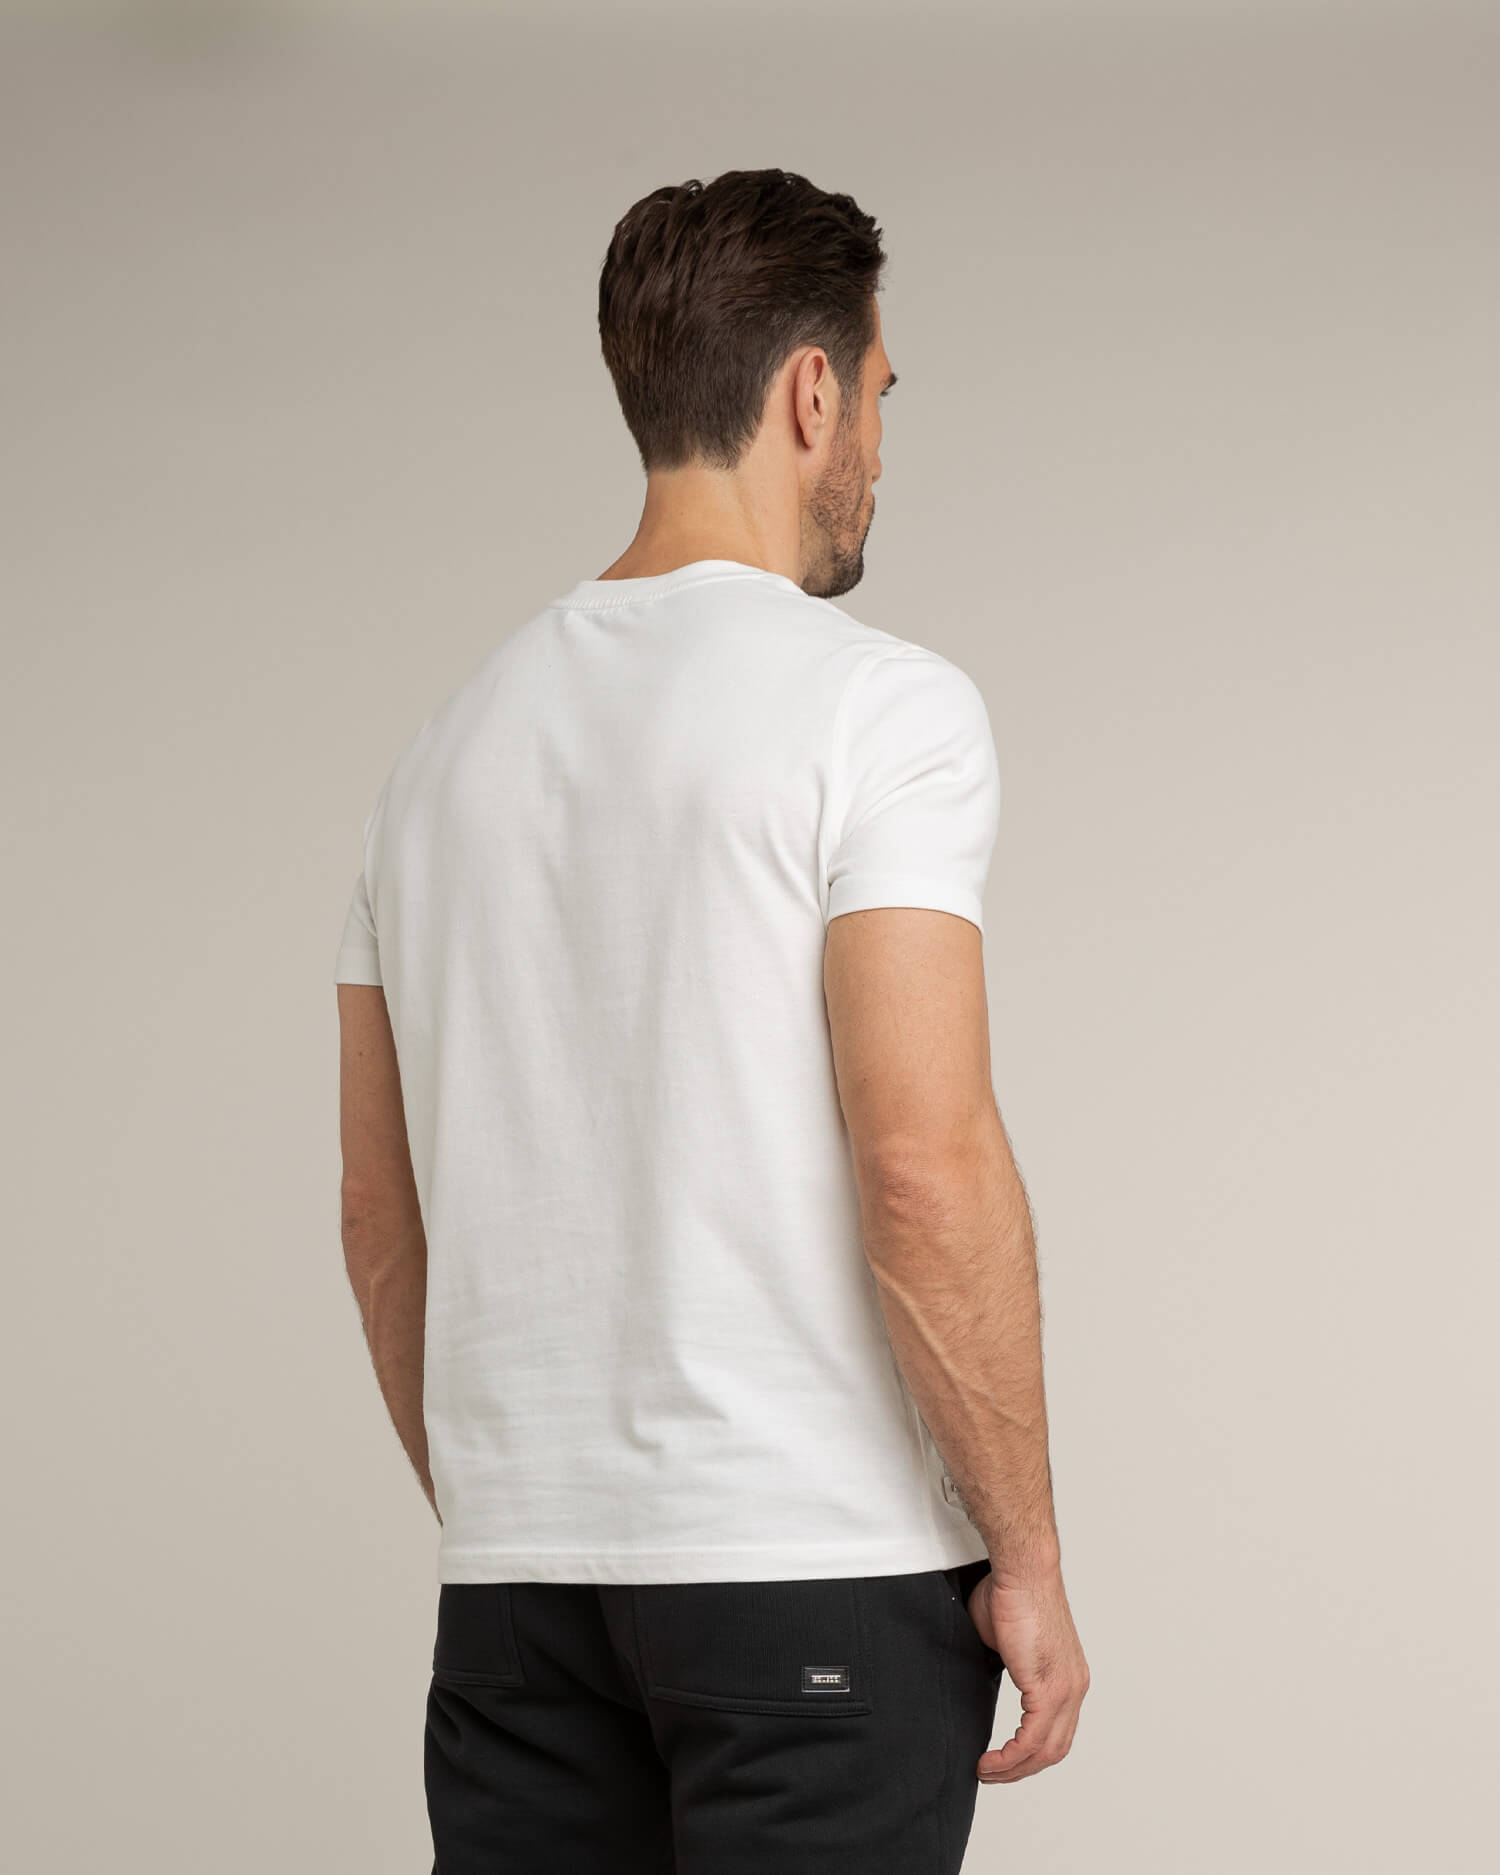 Herren Baumwoll Basic T Shirt mit Tasche Weiß Off White Rückenansicht